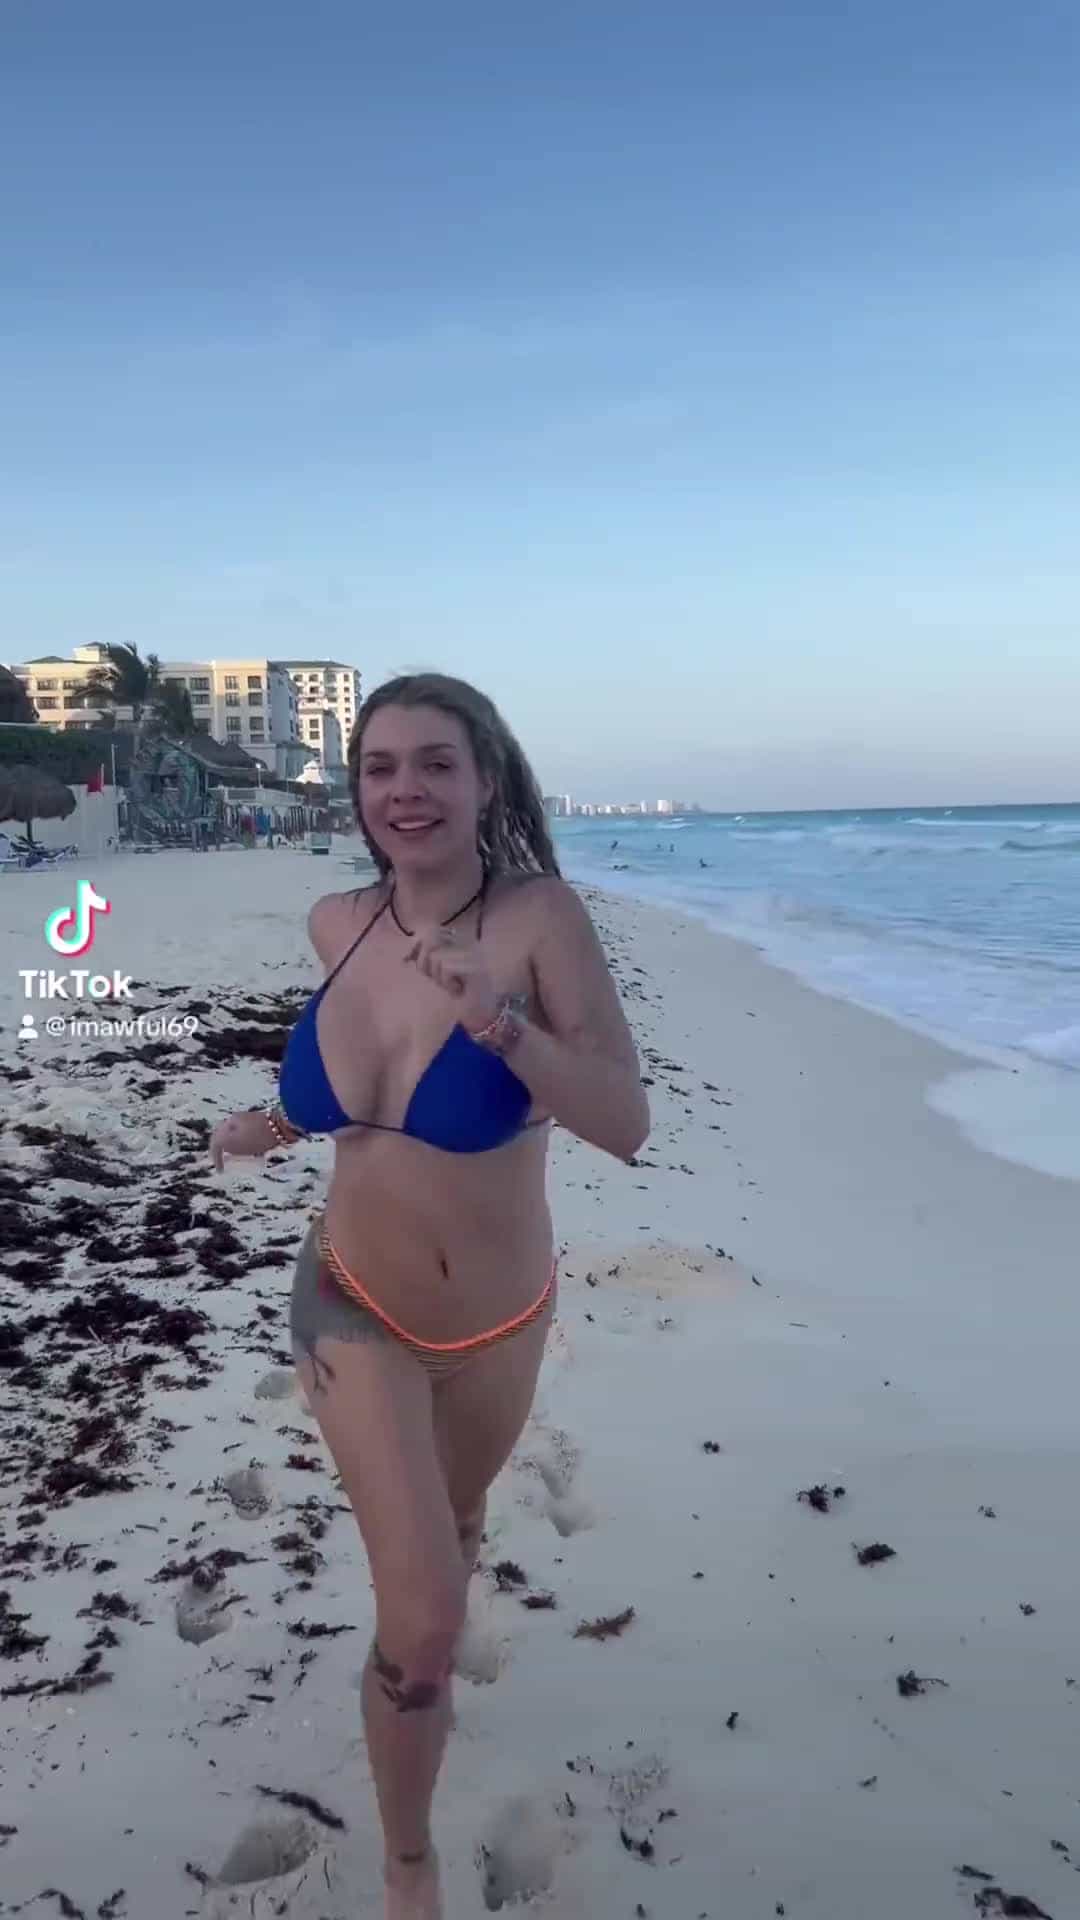 Bouncing boobs in bikinis